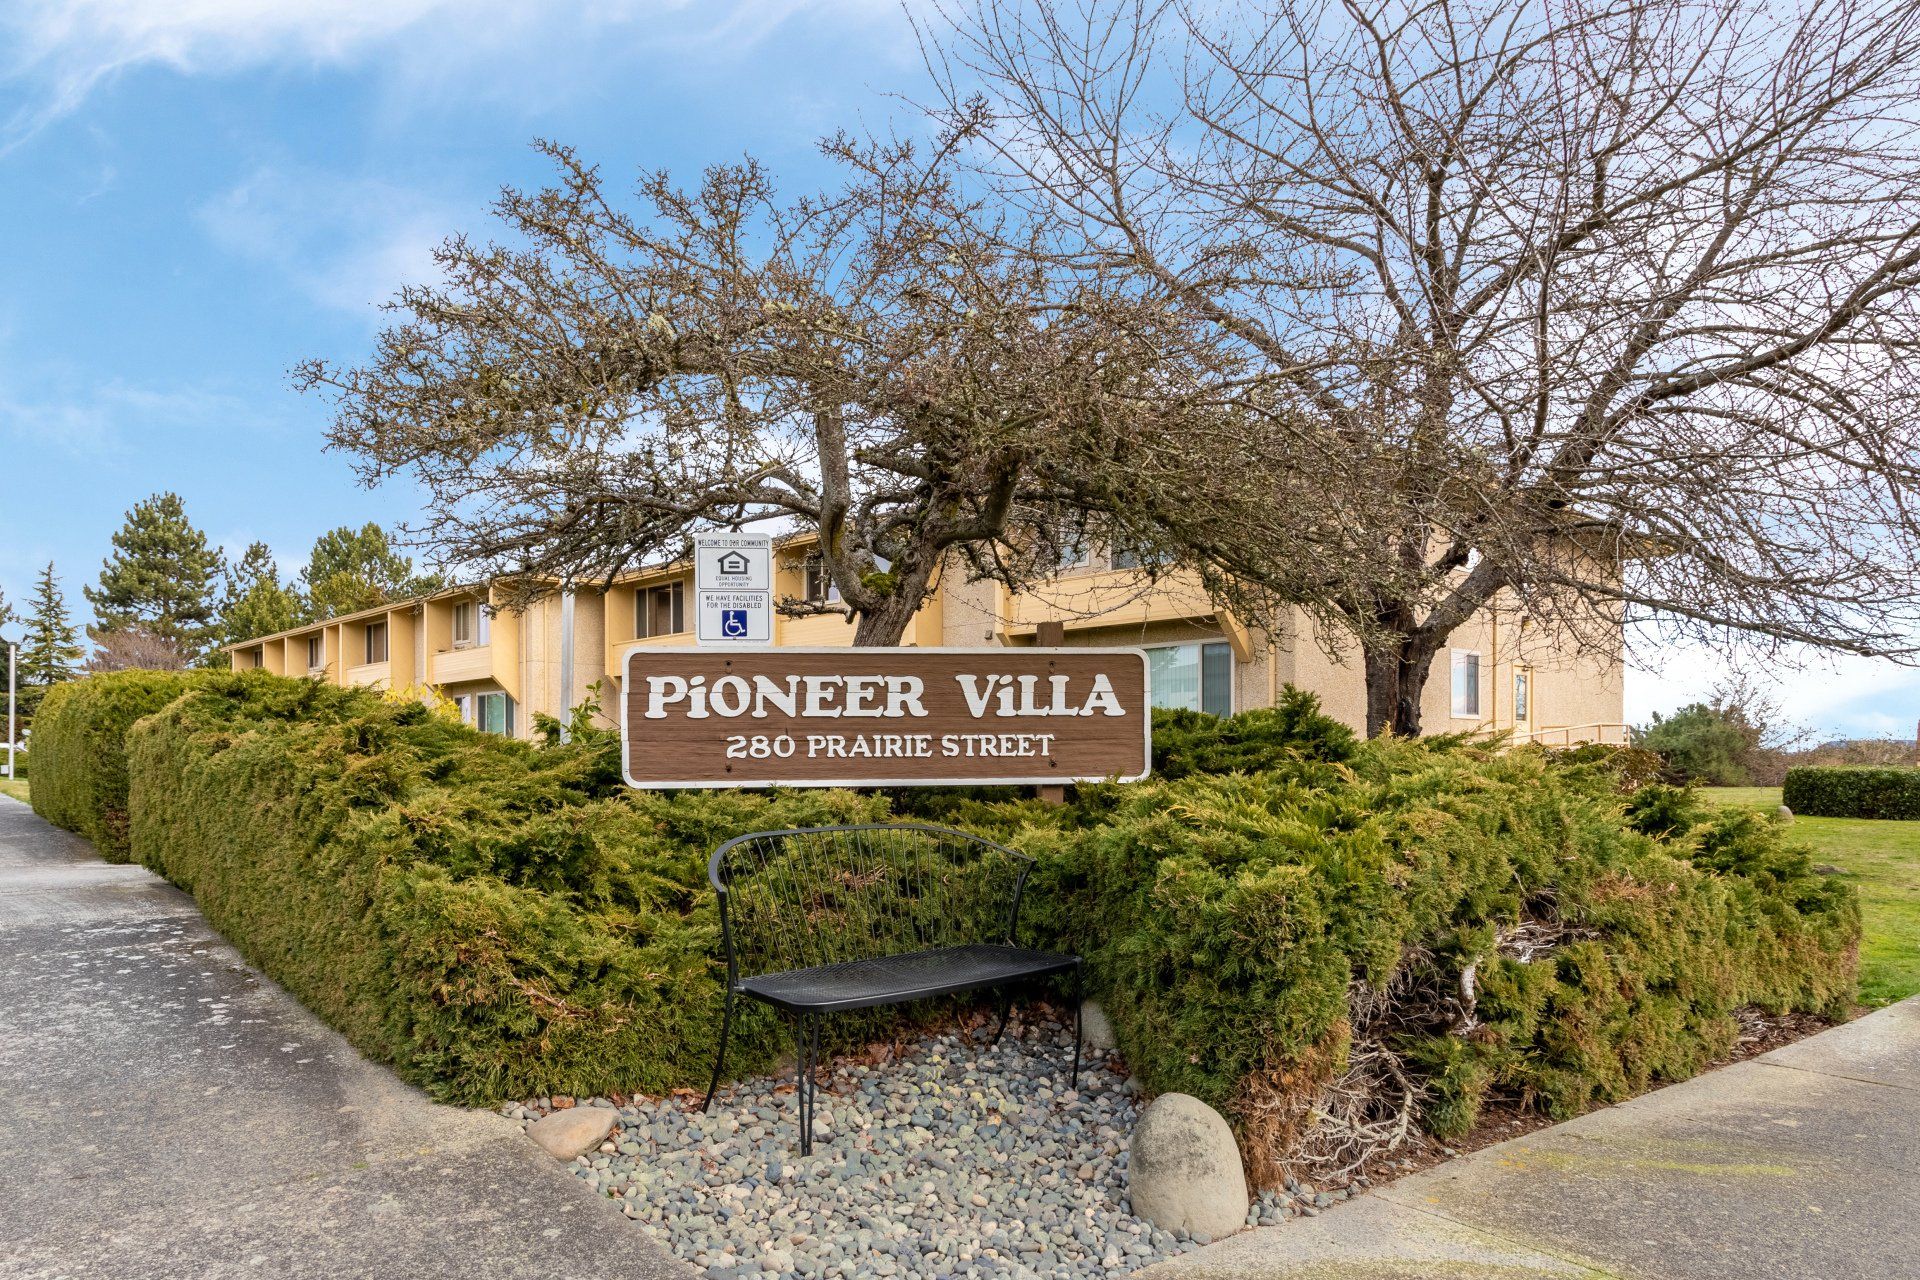 Pioneer Villa Photo Gallery